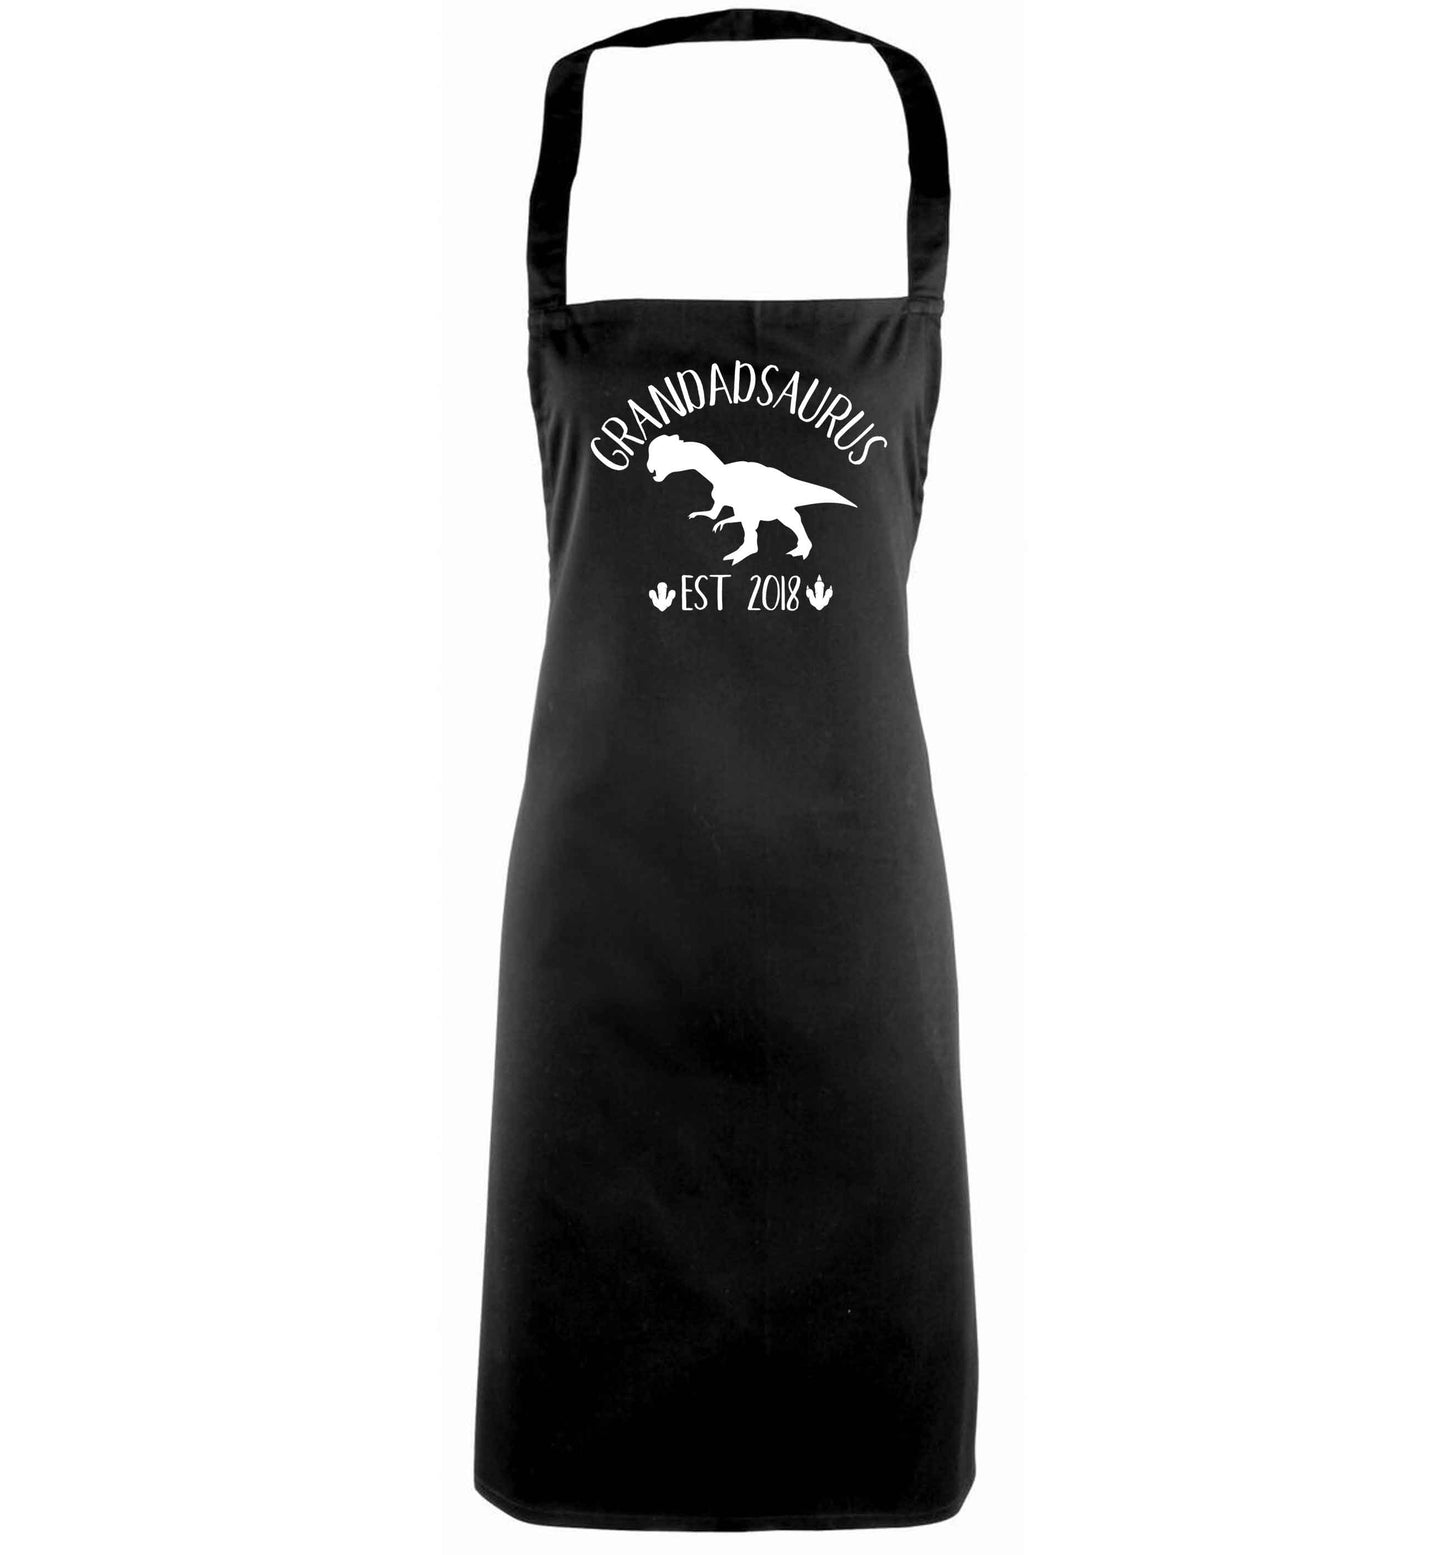 Personalised grandadsaurus since (custom date) black apron